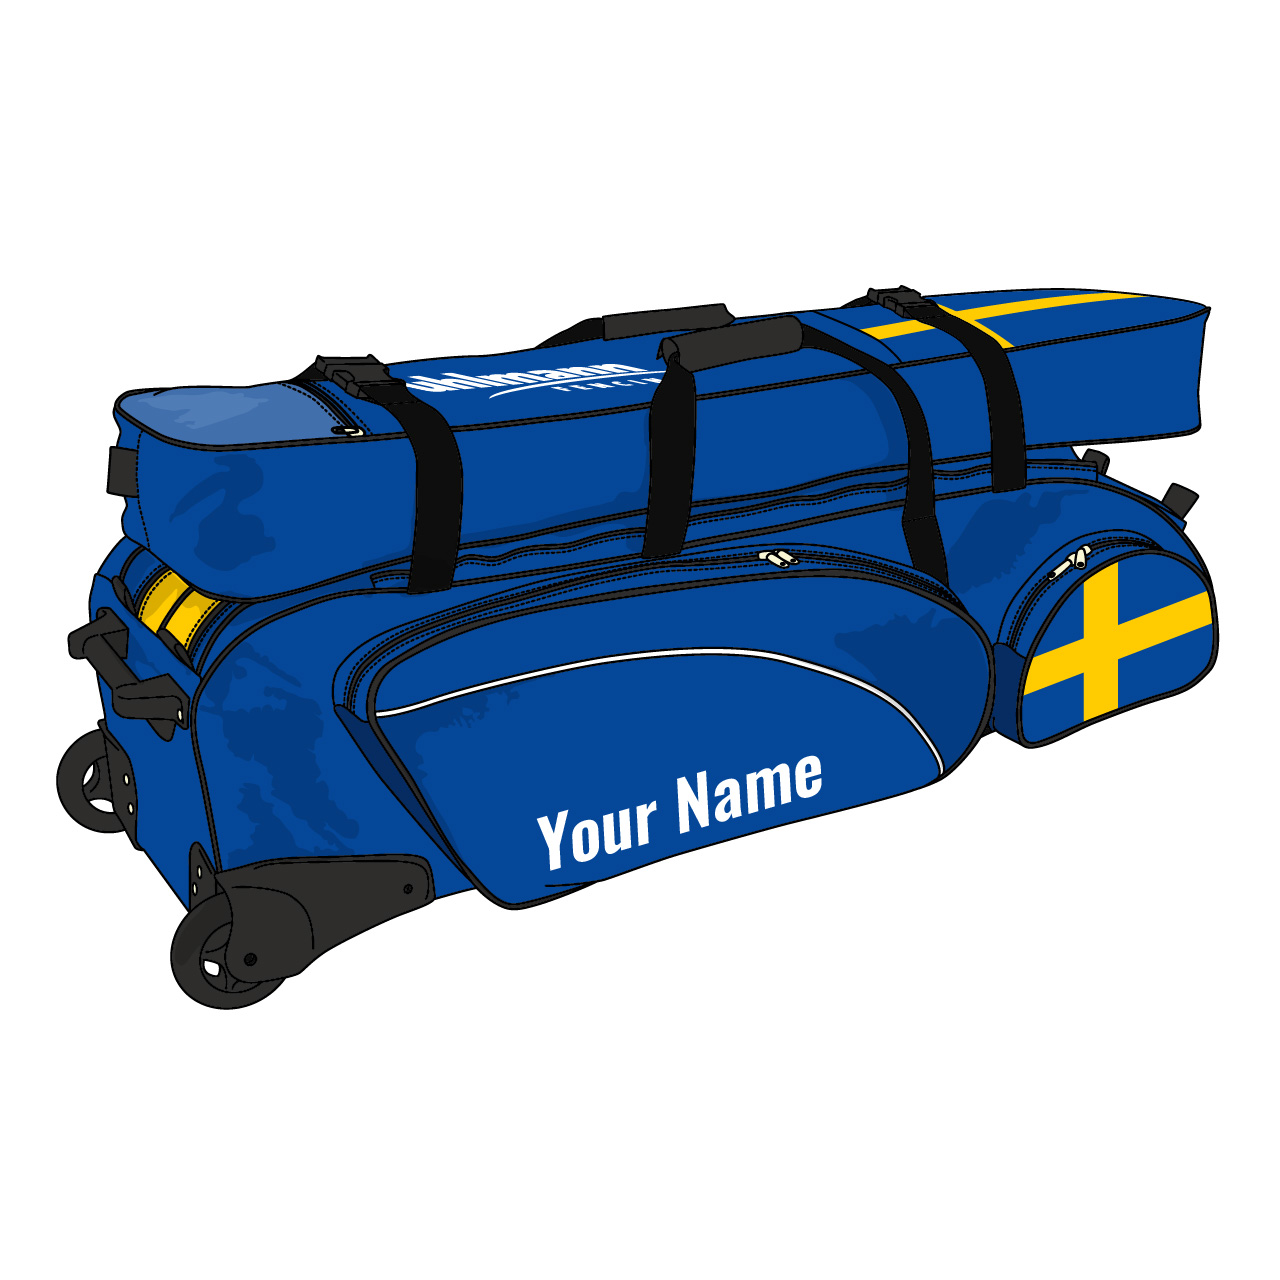 Team-Rollbag "Jumbo Spezial", 2 Hauptfächer, 3 Vordertaschen, 1 Aufsatztasche